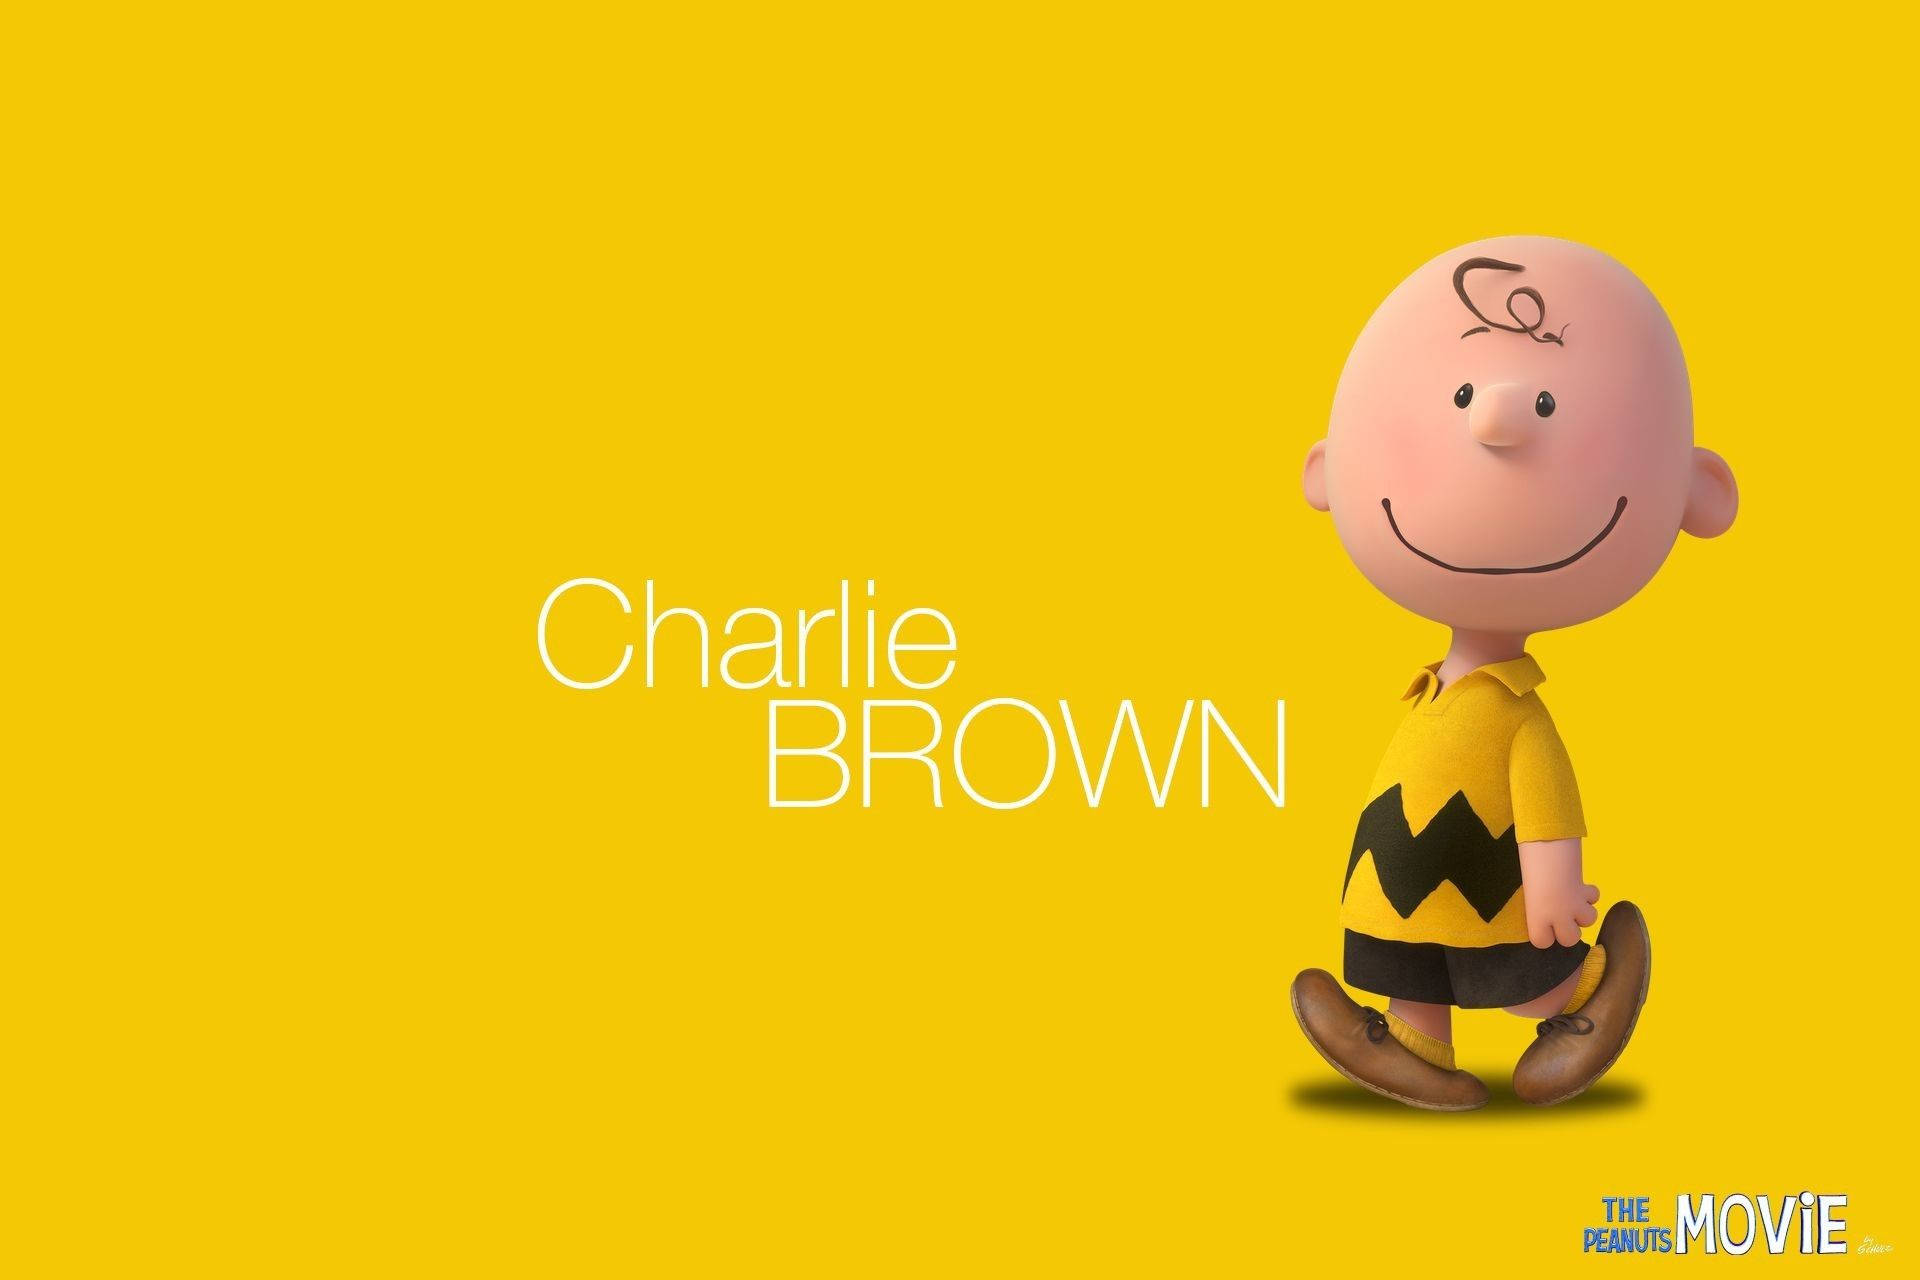 Personajede Charlie Brown En La Película De Peanuts Fondo de pantalla